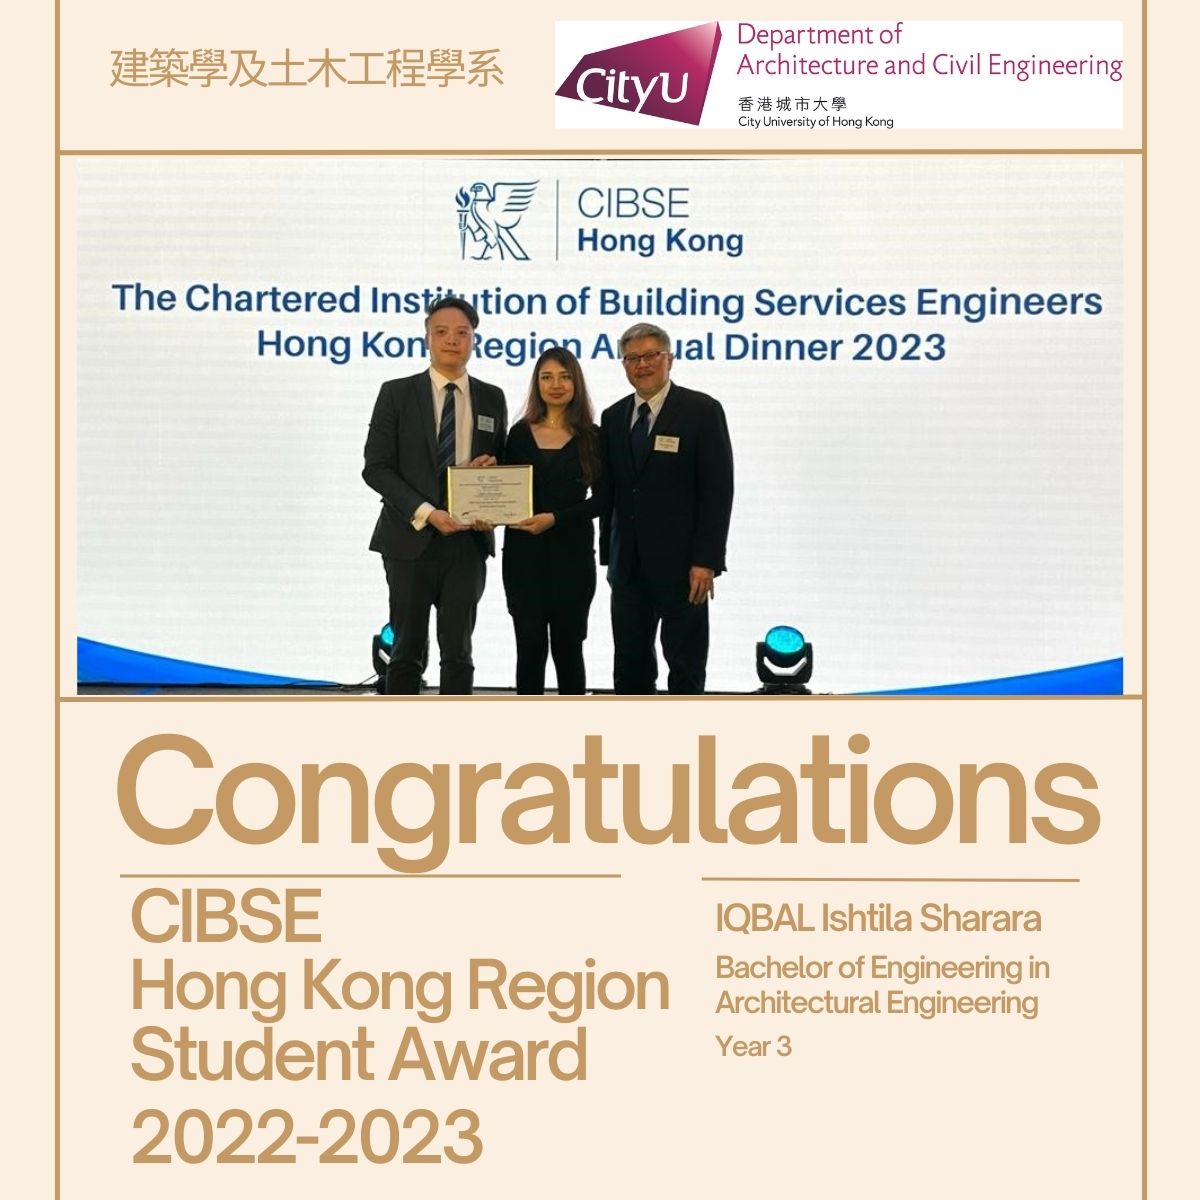 CIBSE Hong Kong Region Student Award 2022-2023